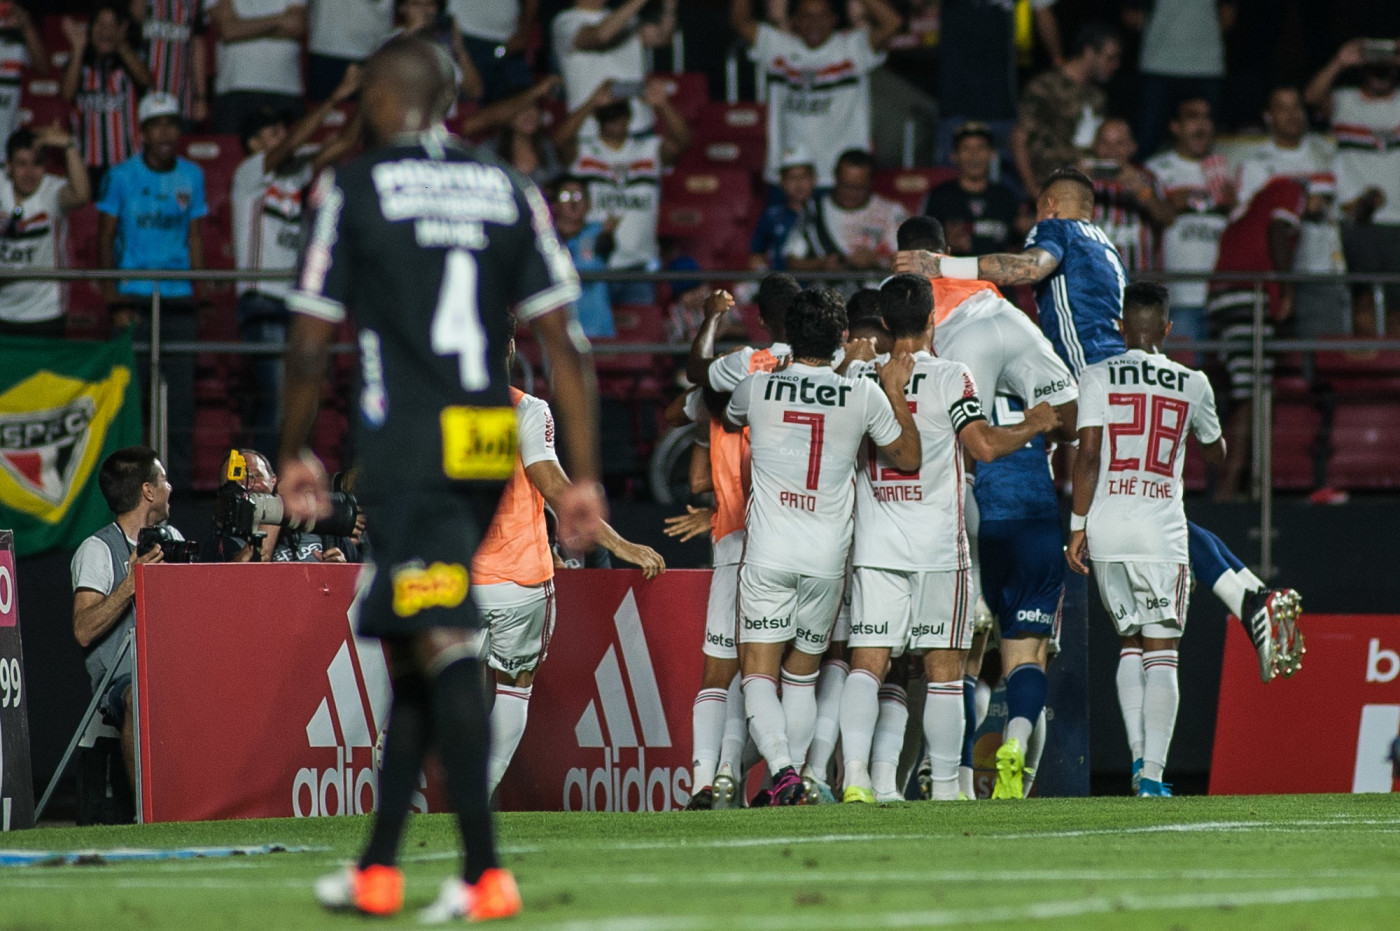 Preocupante: era promissor no Corinthians e agora sumiu do futebol